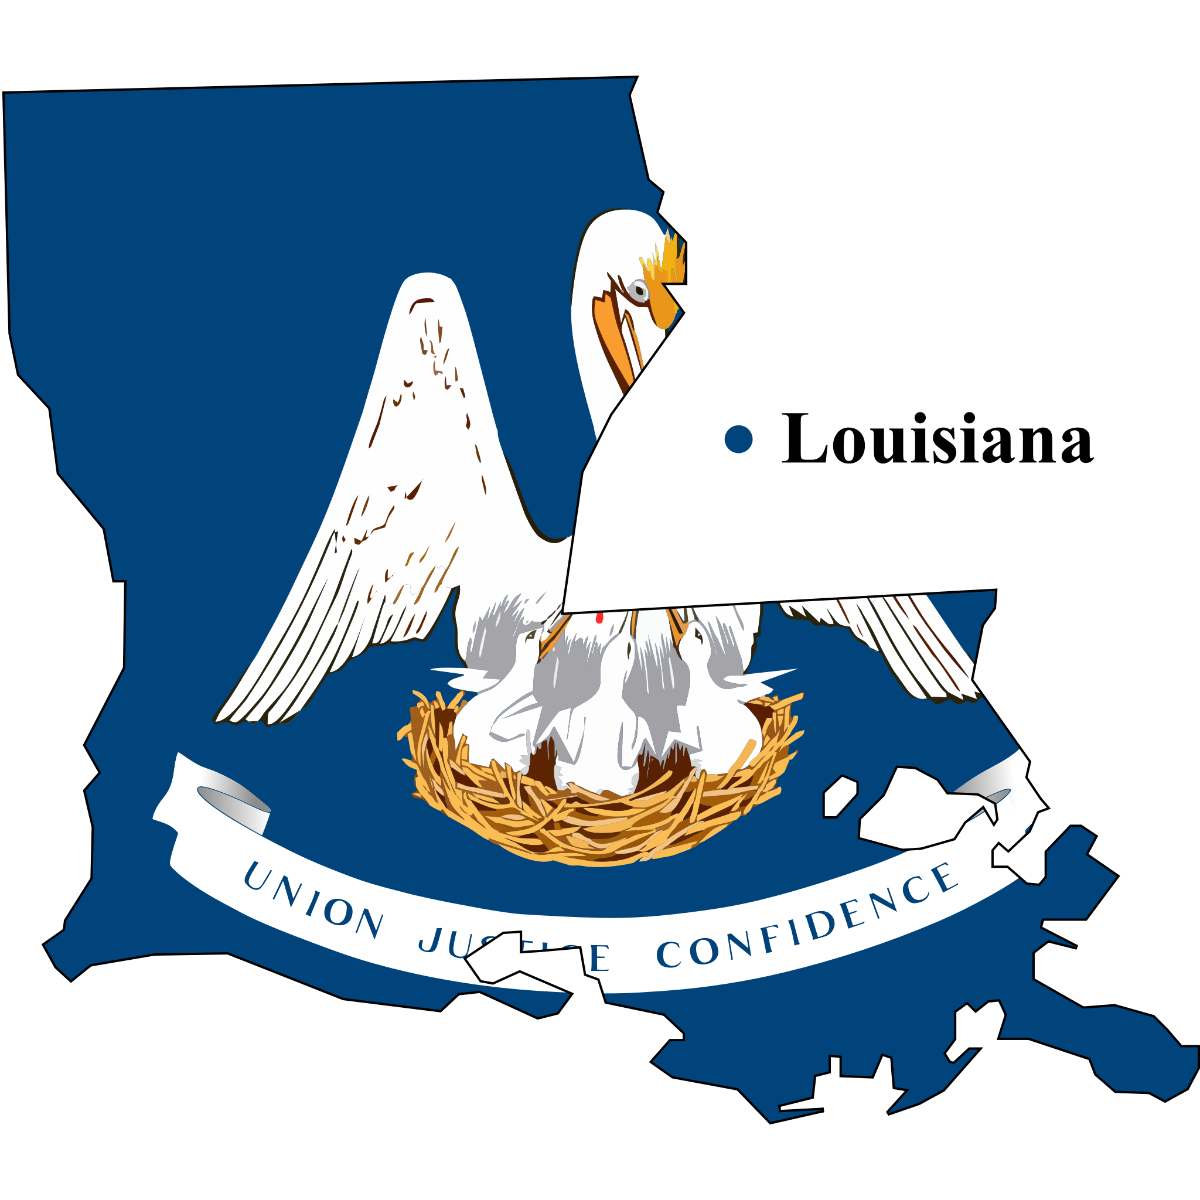 Louisiana State map cutout with Louisiana flag superimposed